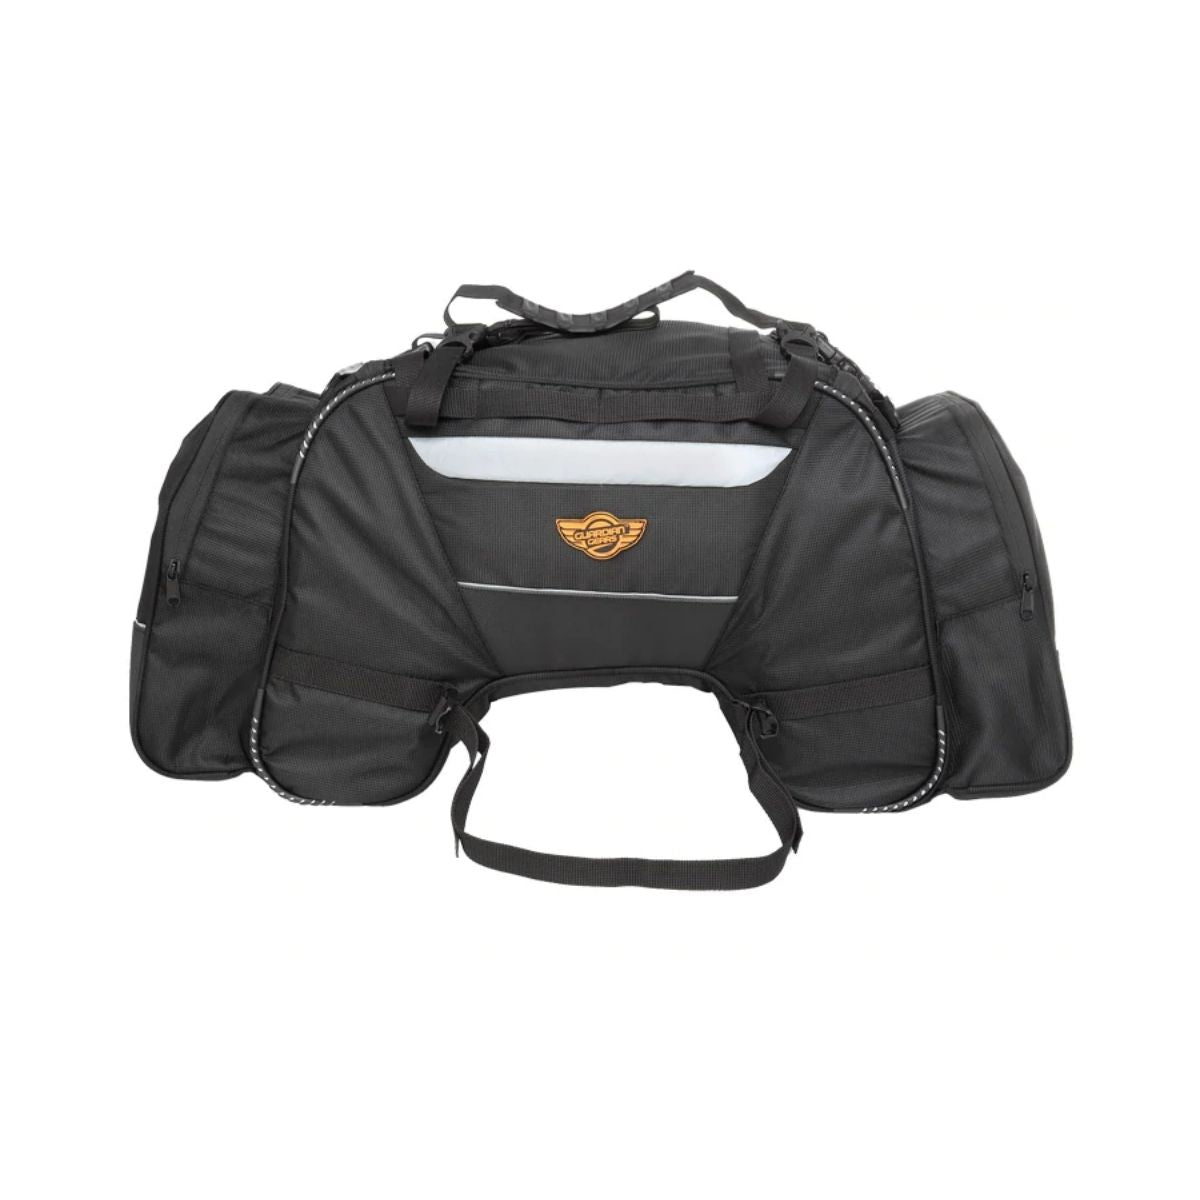 Rhino Mini 50L Tail Bag with Rain Cover & Dry Bag - Black - 2